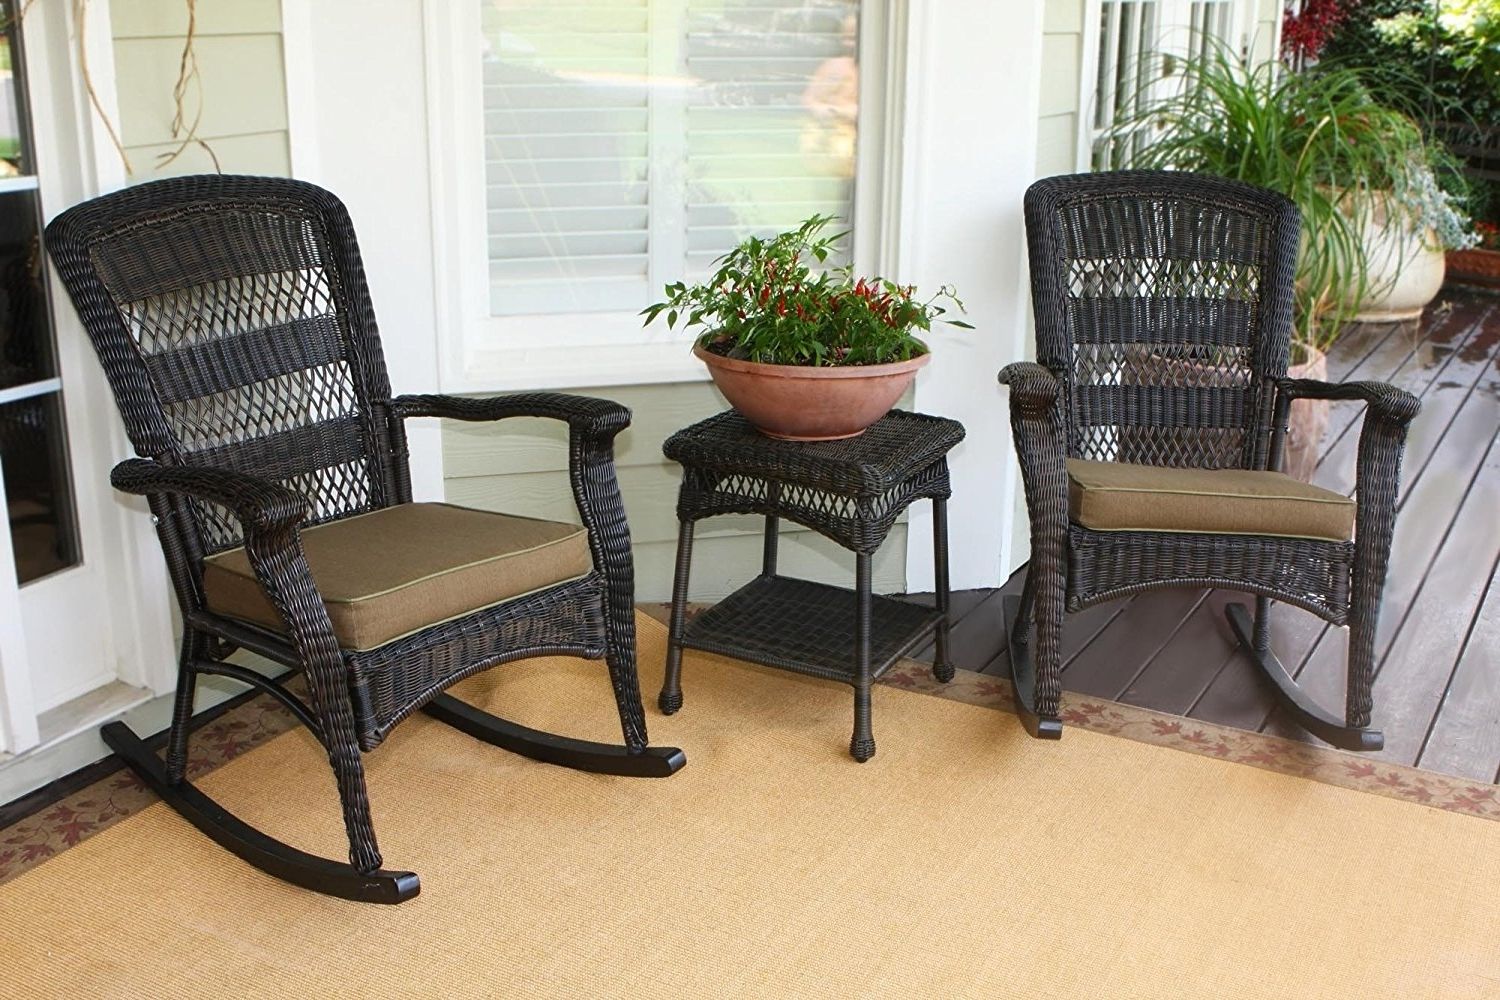 Outdoor Wicker Rocking Chair Uk – Outdoor Designs Regarding Popular Rattan Outdoor Rocking Chairs (View 6 of 15)